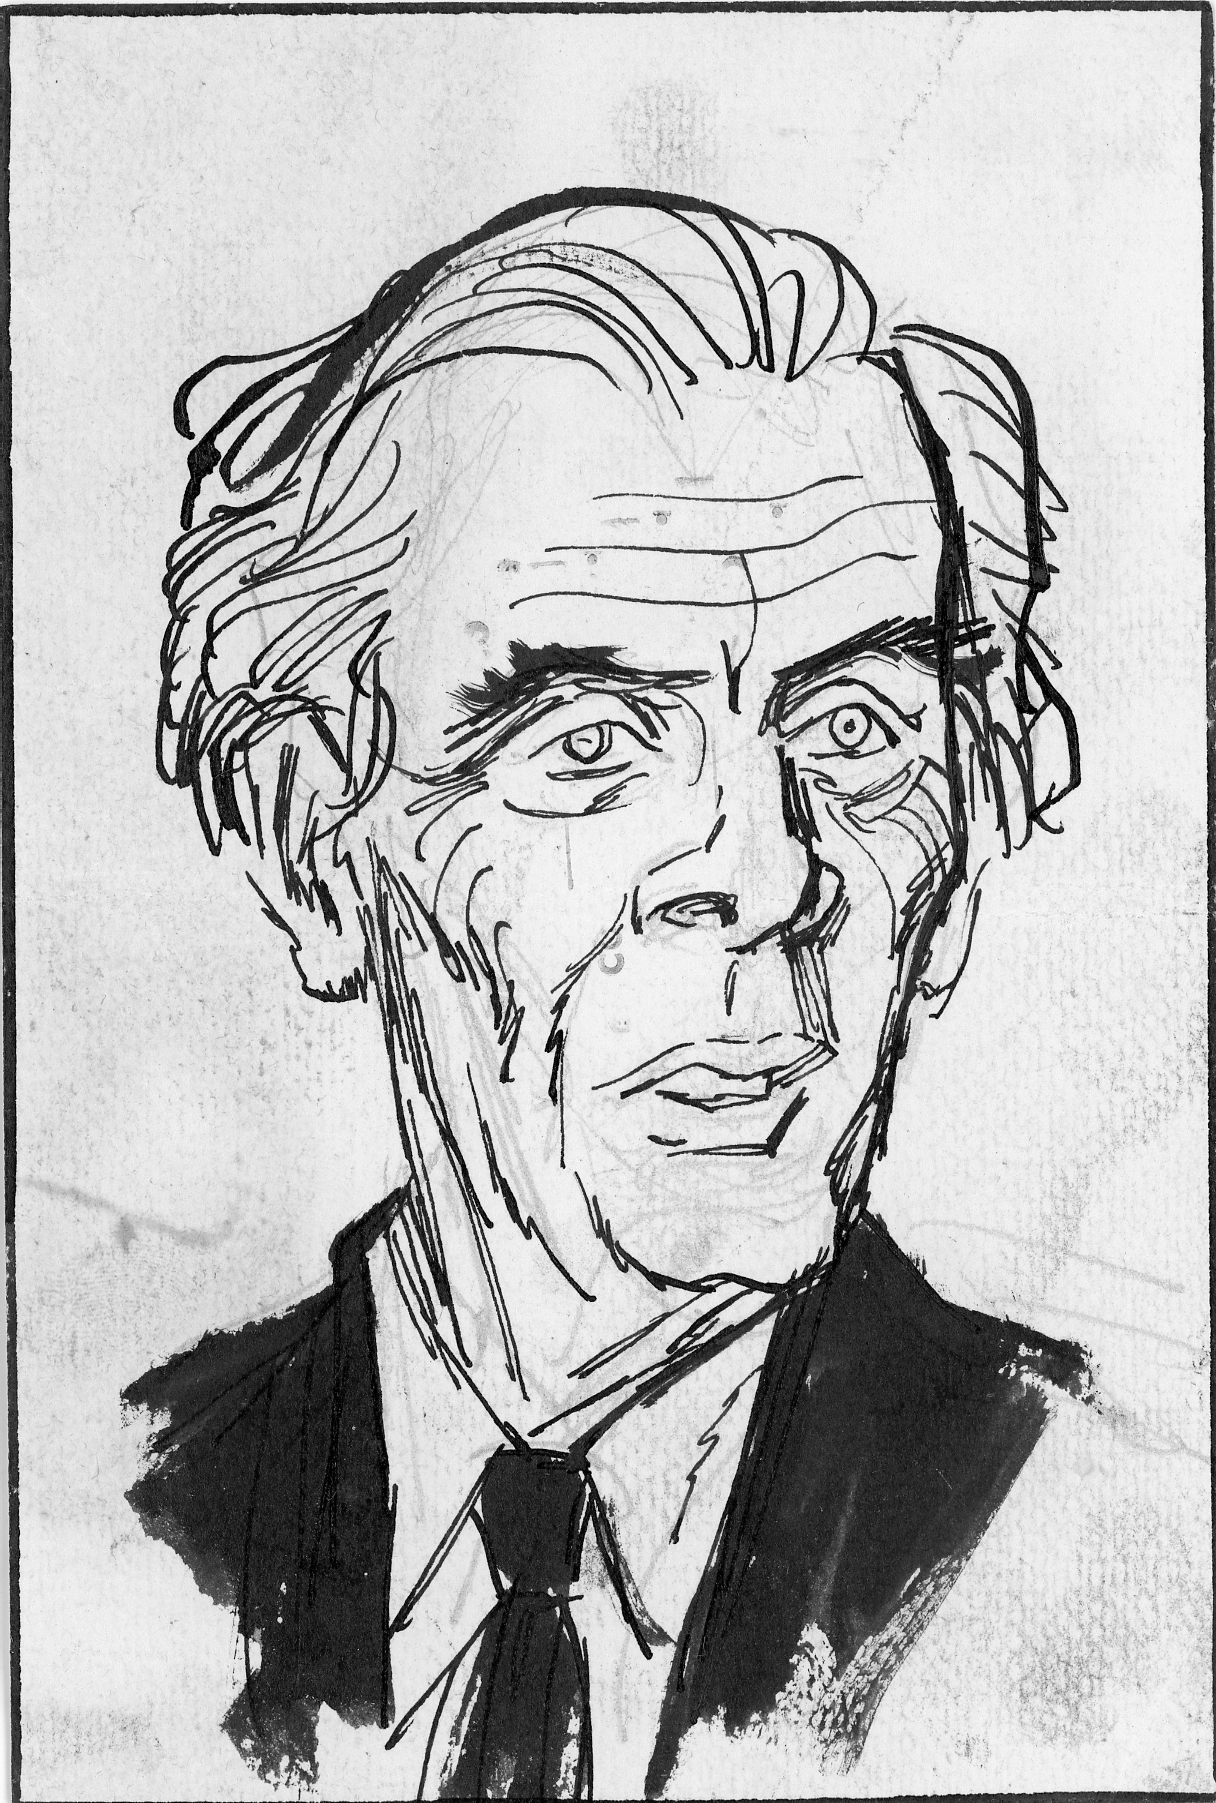 Dibujo del rostro del escritor inglés Aldous Huxley, que El Comercio publicó por esos días de su visita al Perú, entre fines de julio y comienzos de agosto de 1958. La prensa peruana quedó impactada con sus palabras, su visión del mundo y su lucidez apocalíptica. (Foto: GEC Archivo Histórico).